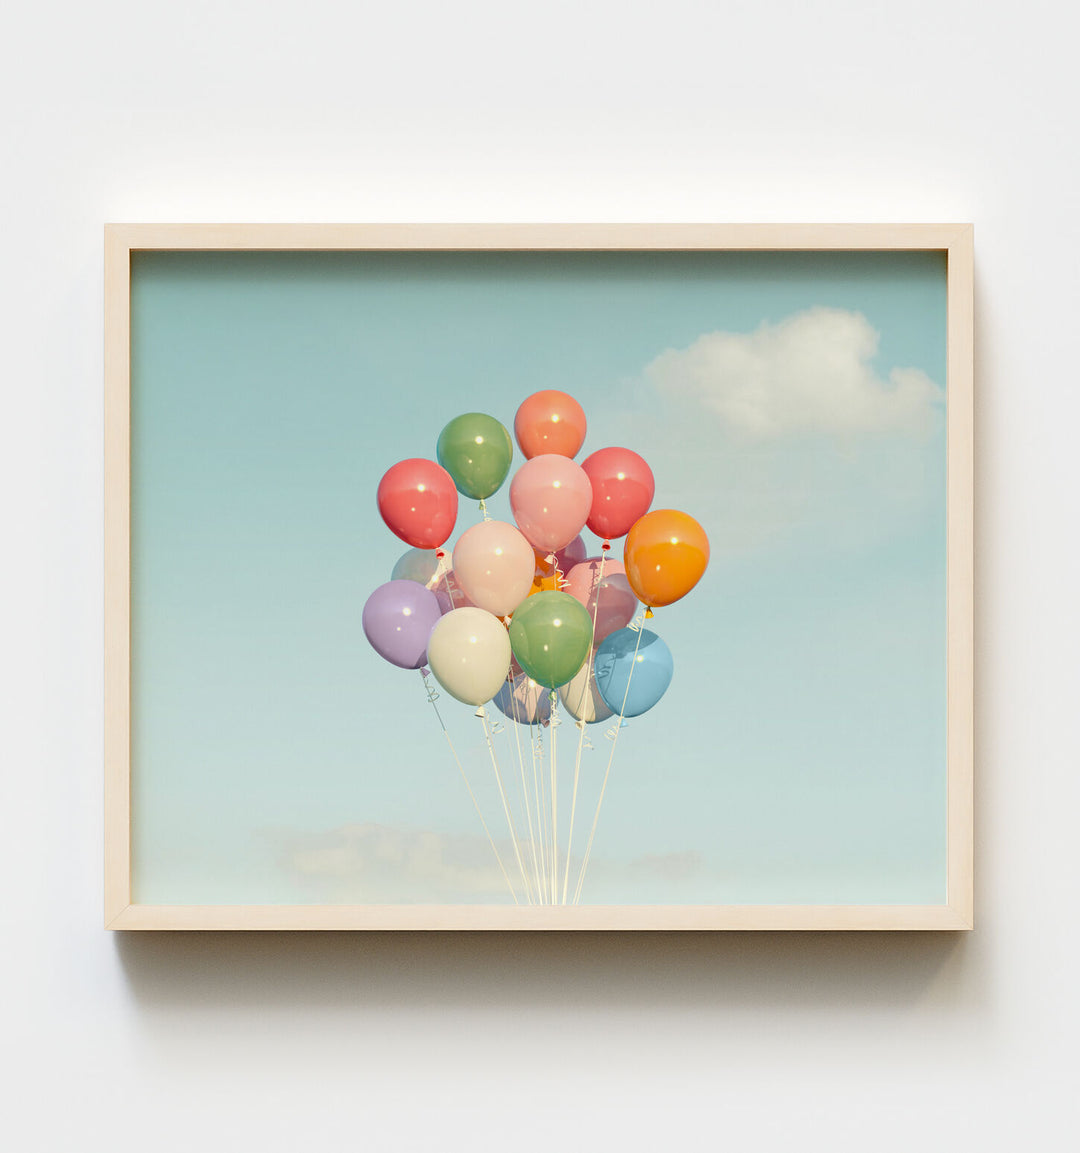 Balloons Make Everything Better Art Print